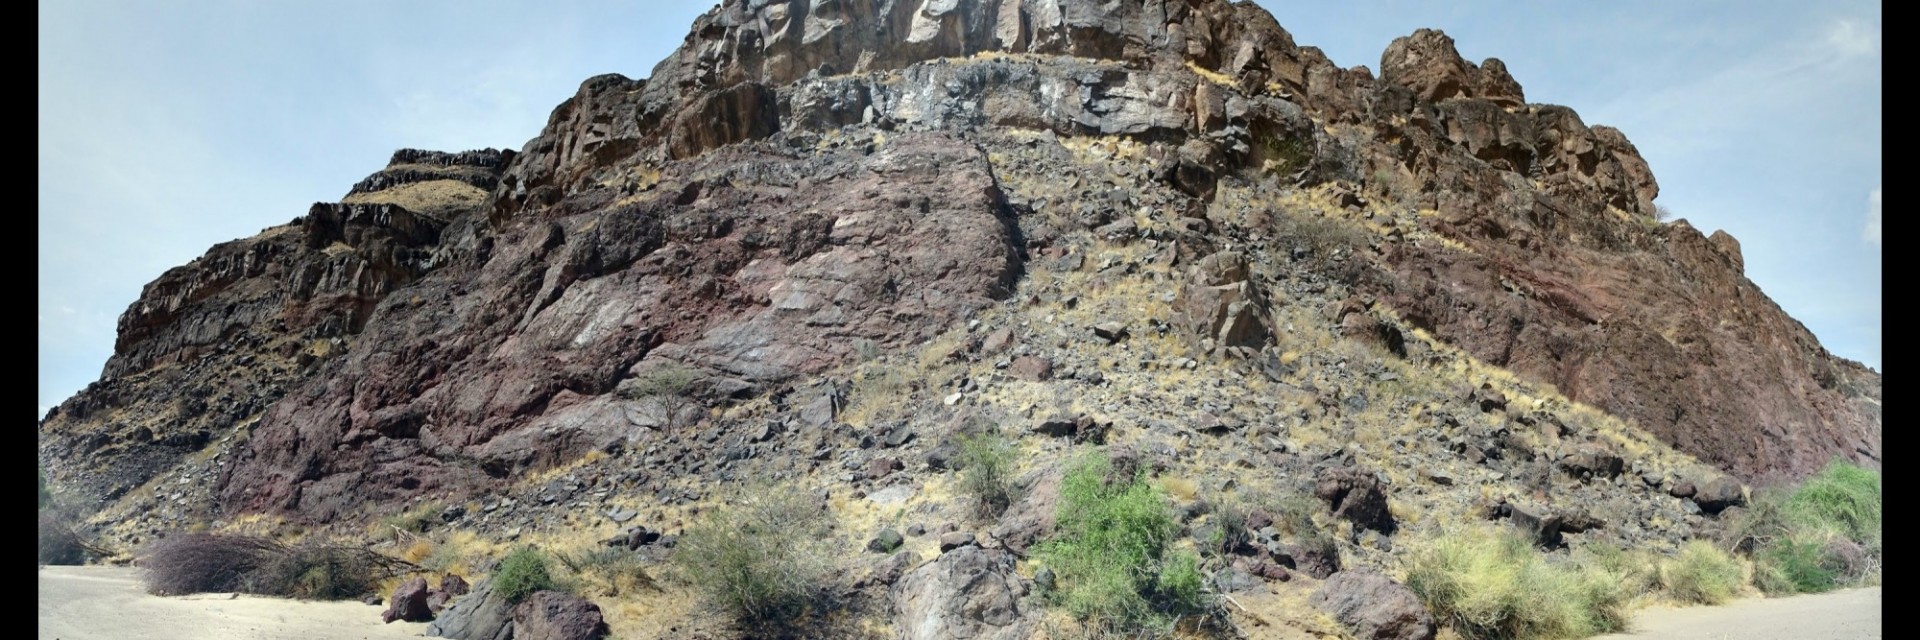 A mound of basalt